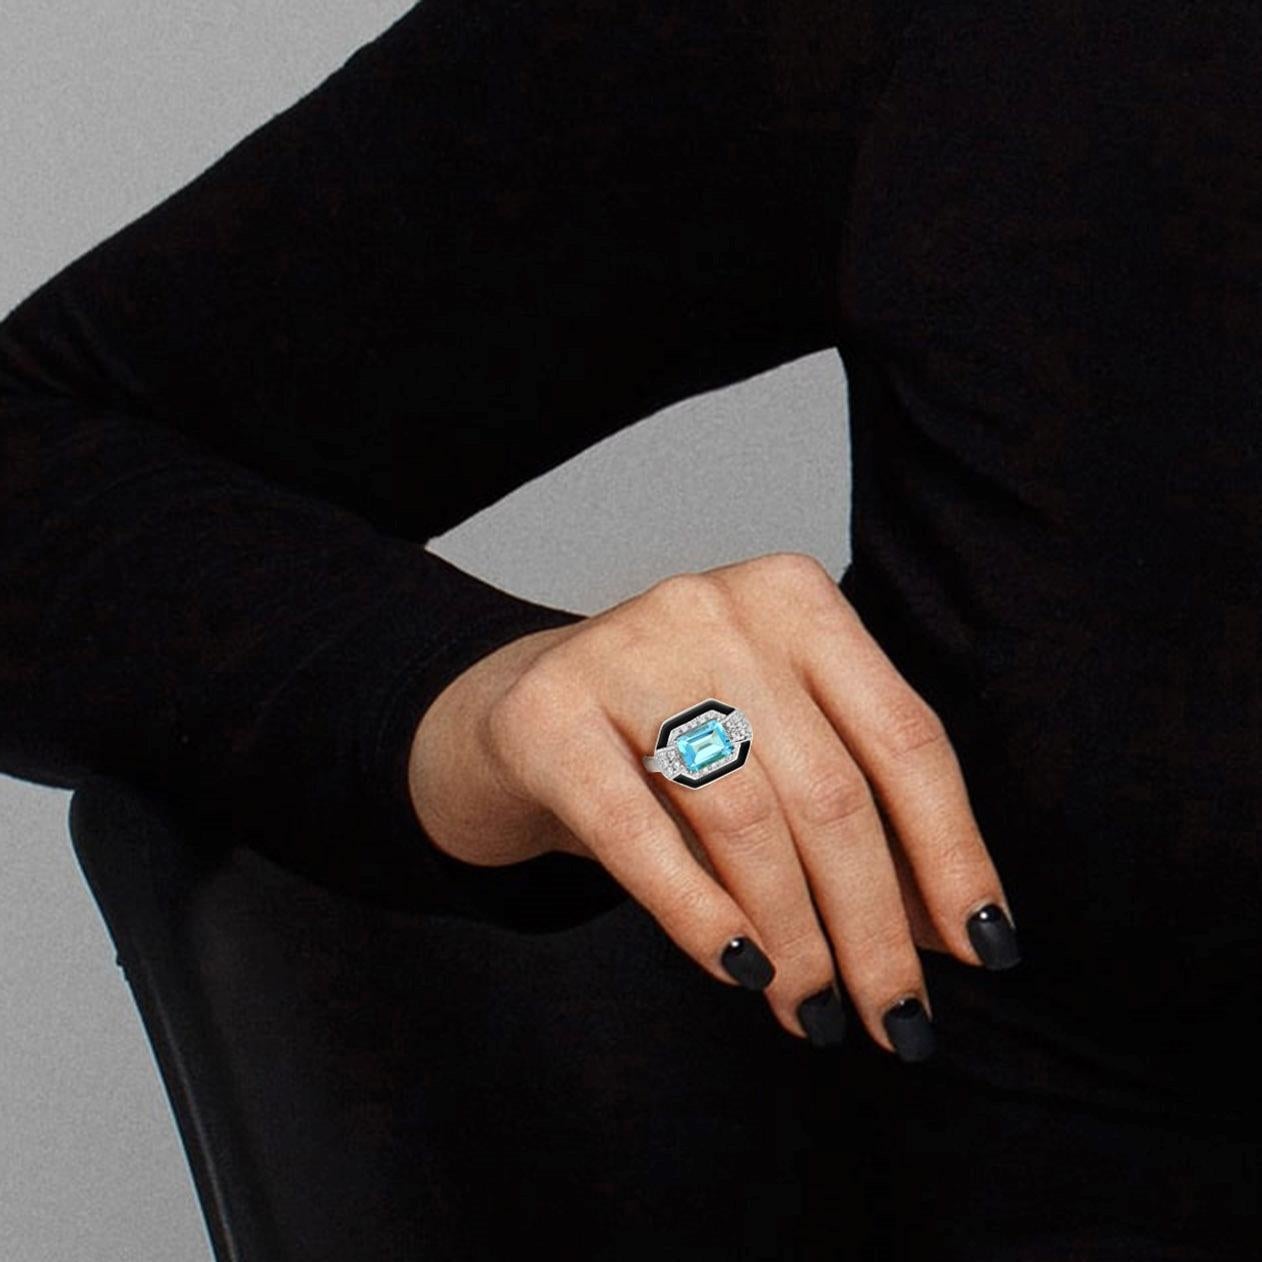 Der schöne Art-Déco-Stil zeichnet sich durch die Kombination von smaragdgeschliffenen himmelblauen Topasen mit Diamanten und schwarzer Emaille aus, die für Macht, Reichtum und Leidenschaft stehen. 

Ring-Informationen
Stil: Art Deco
Metall: 18K